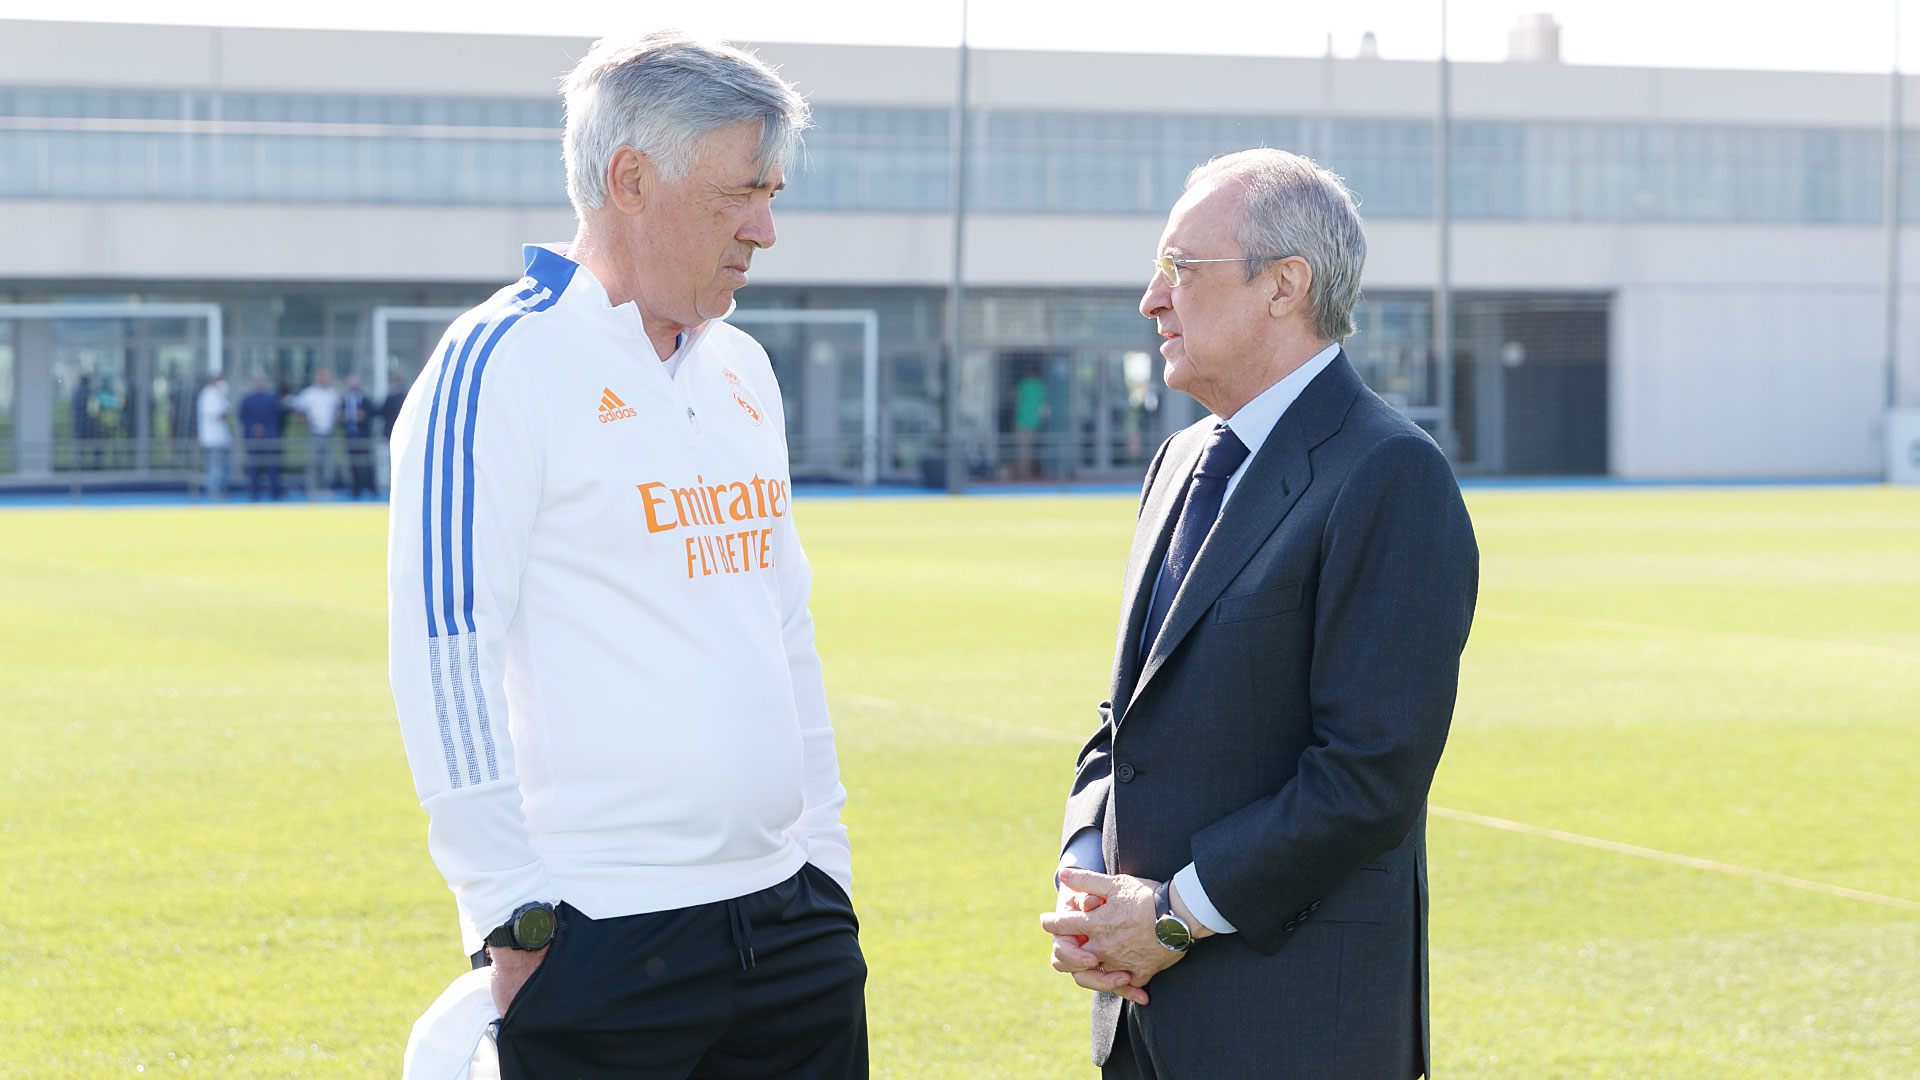 LDC : Ce qu’a dit Carlo Ancelotti à Florentino Pérez après la qualification